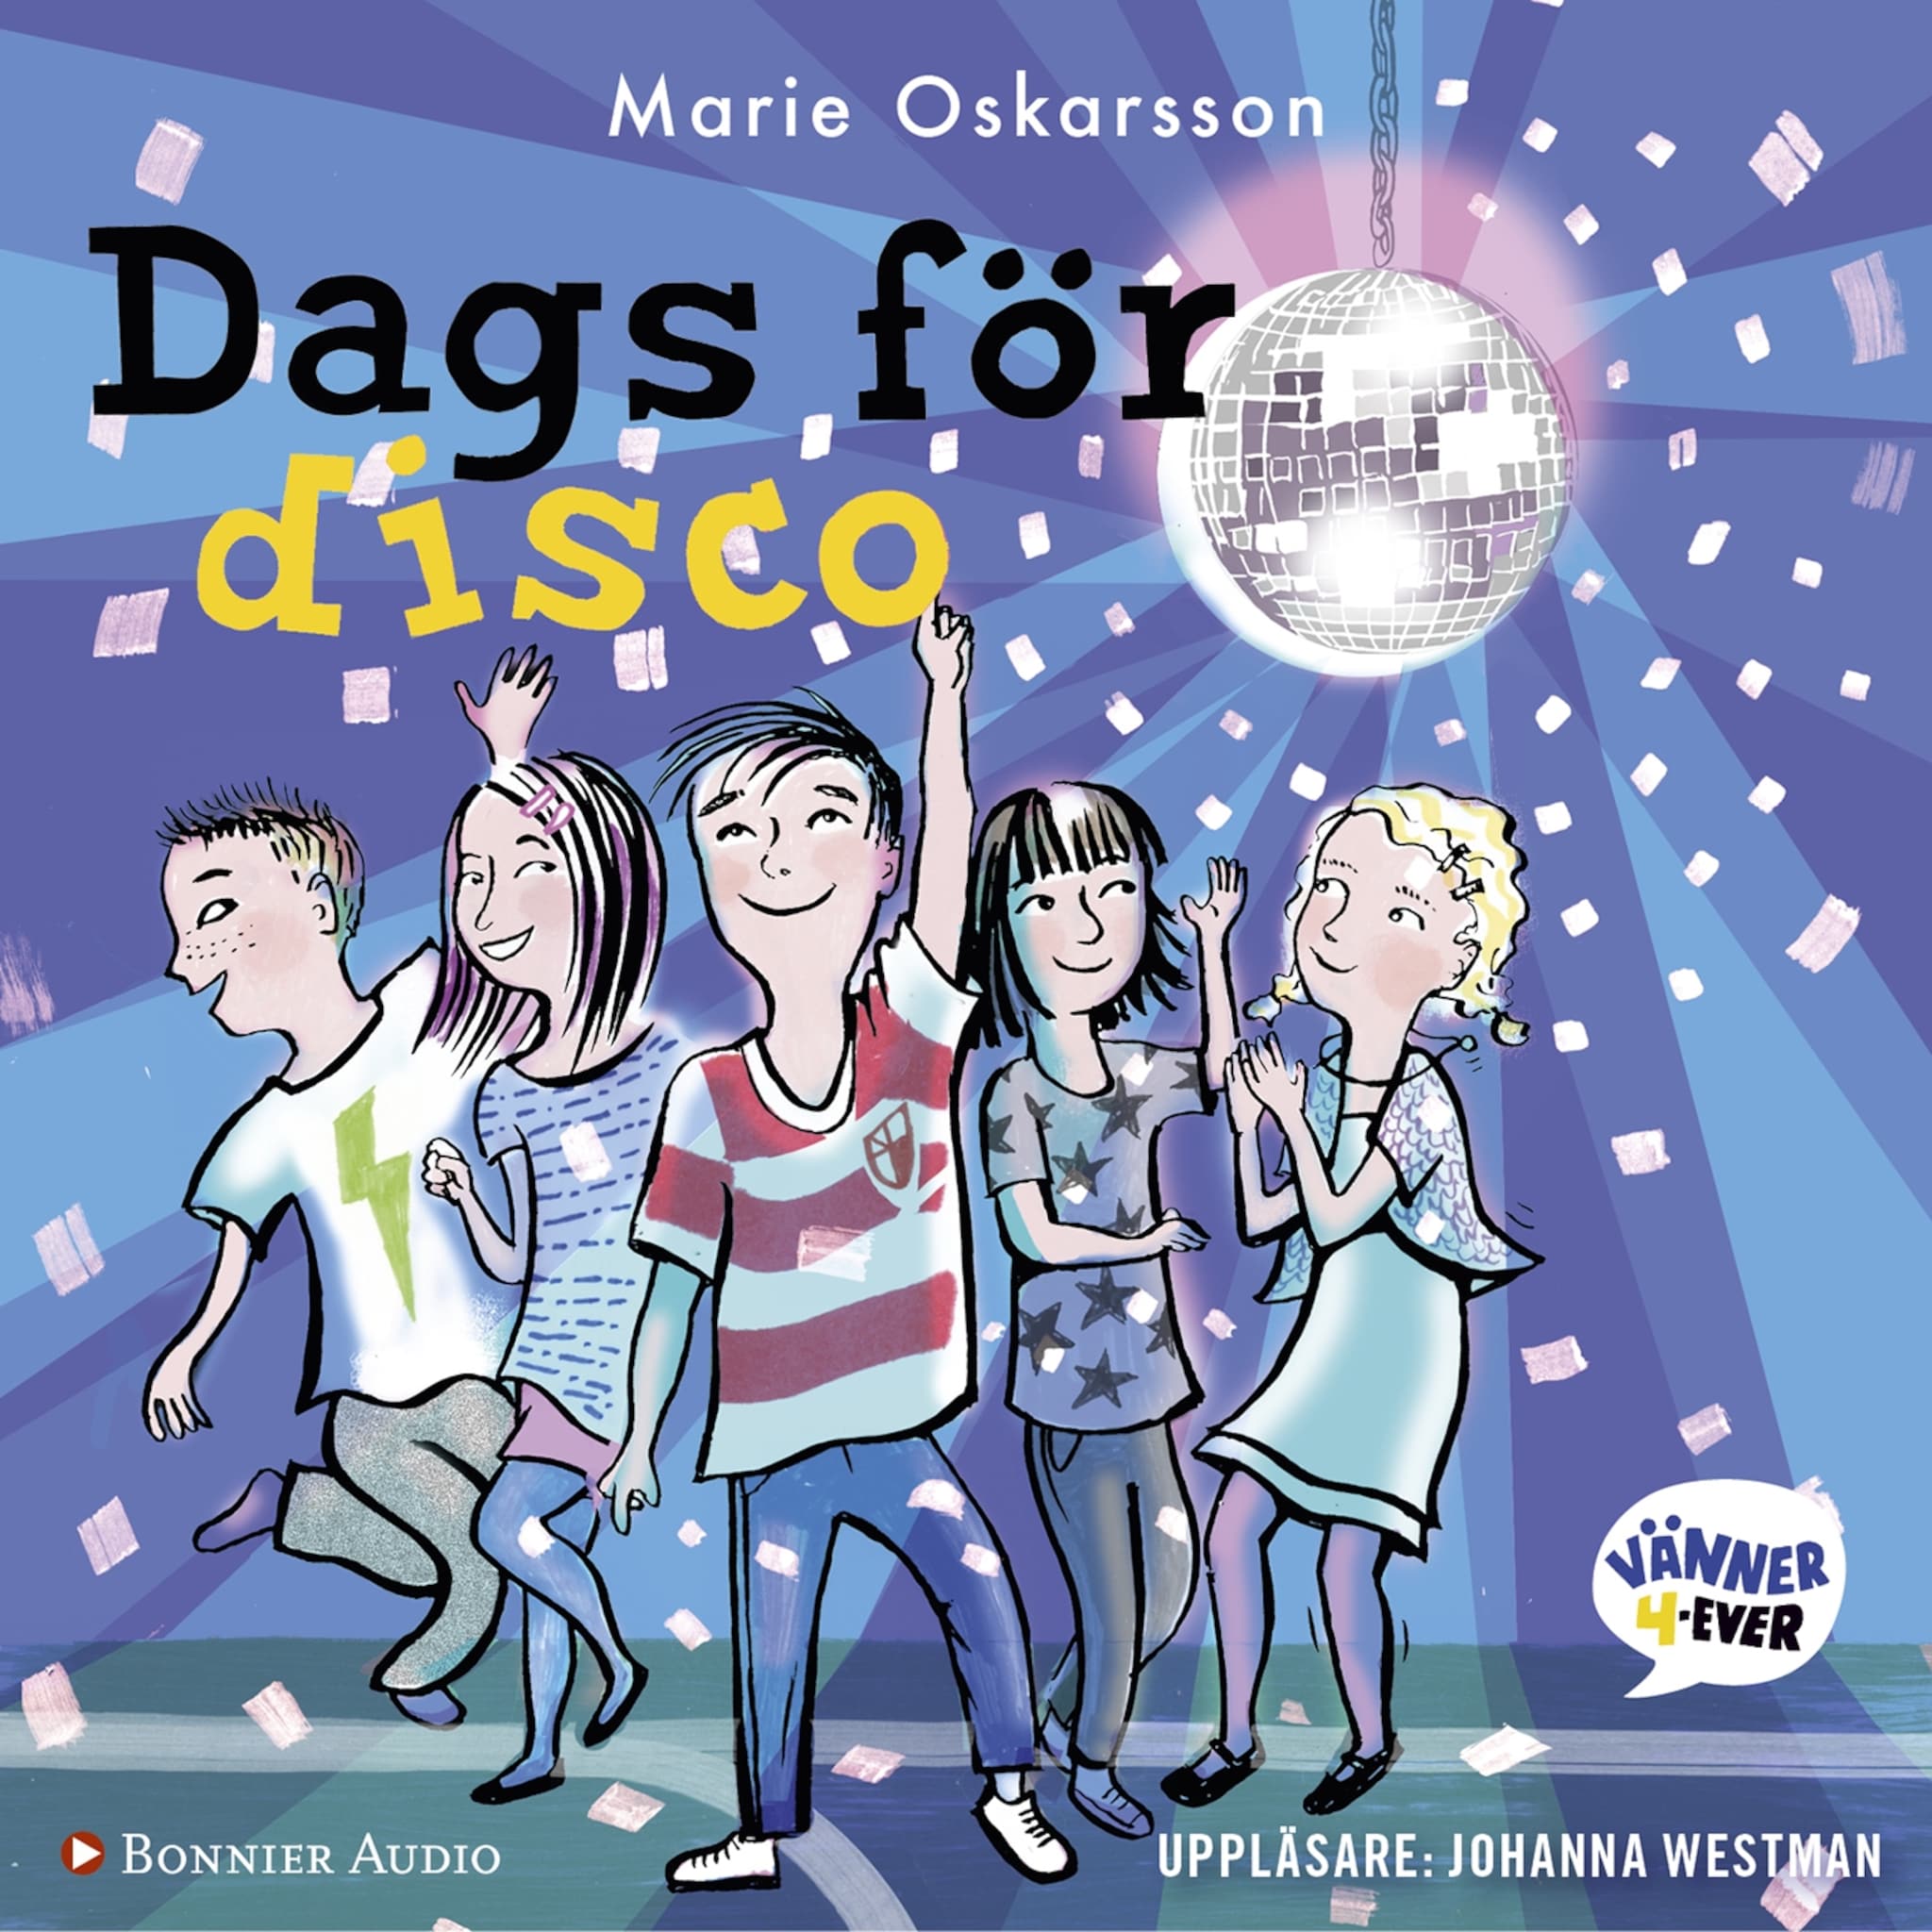 Dags för disco ilmaiseksi